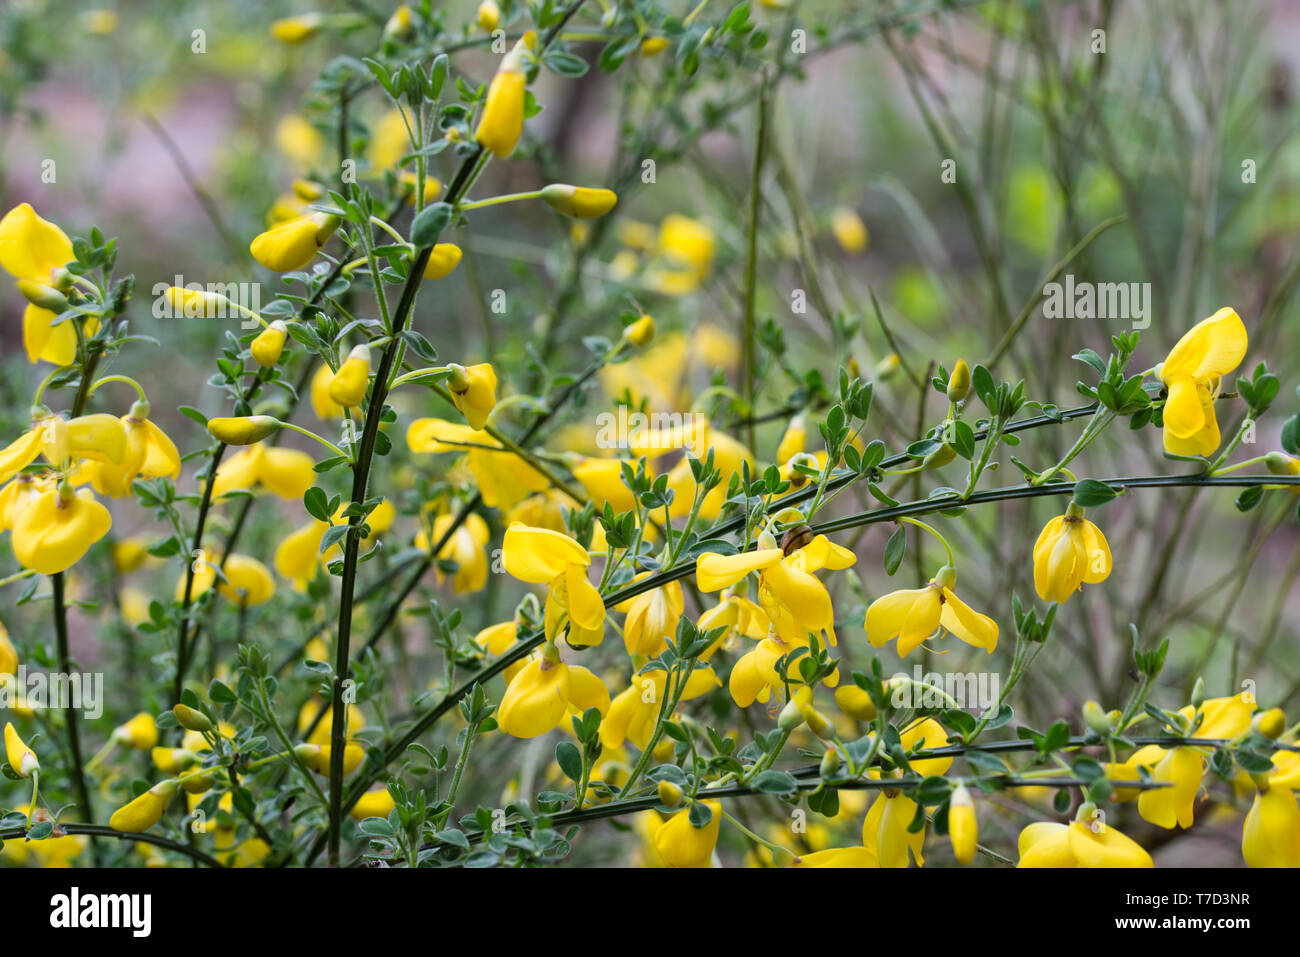 cytisus, brooms yellow flowers on twig macro Stock Photo